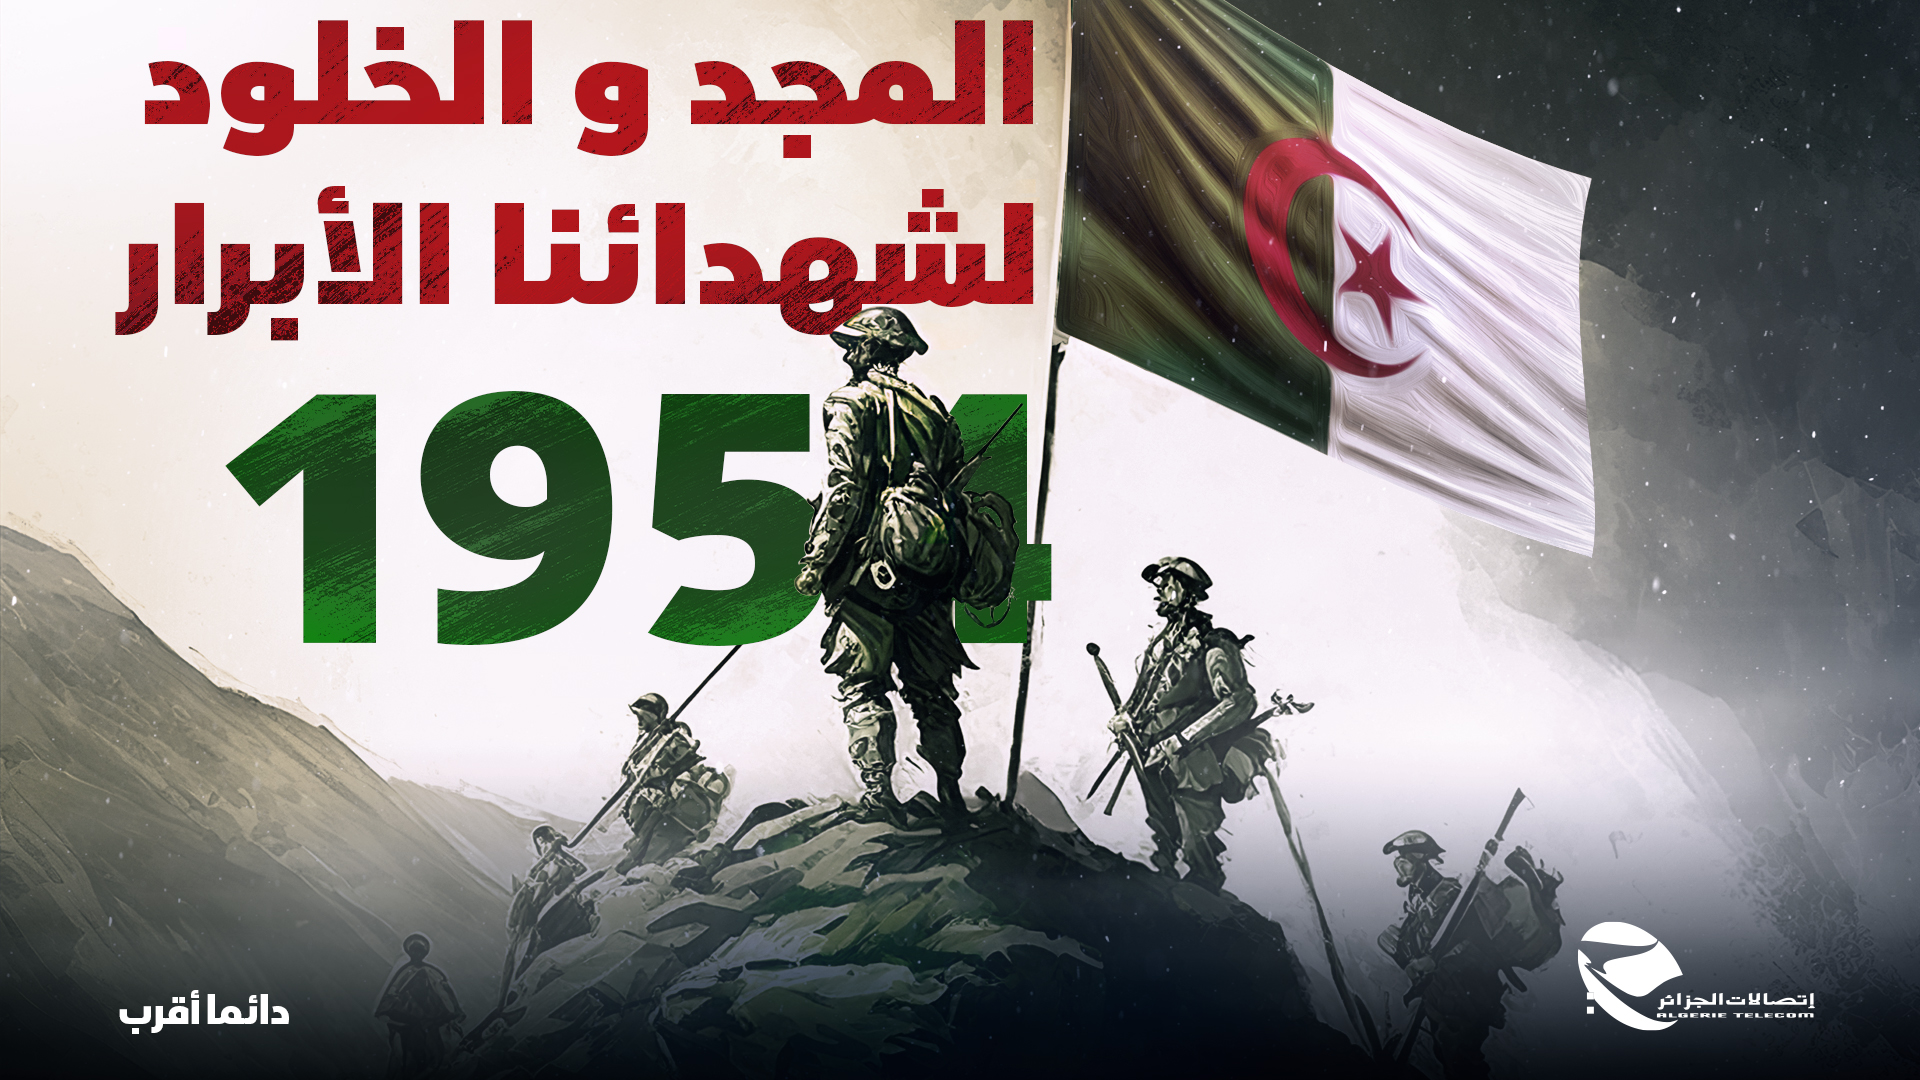 ذكرى أول نوفمبر: إتصالات الجزائر تضمن استمرارية خدماتها